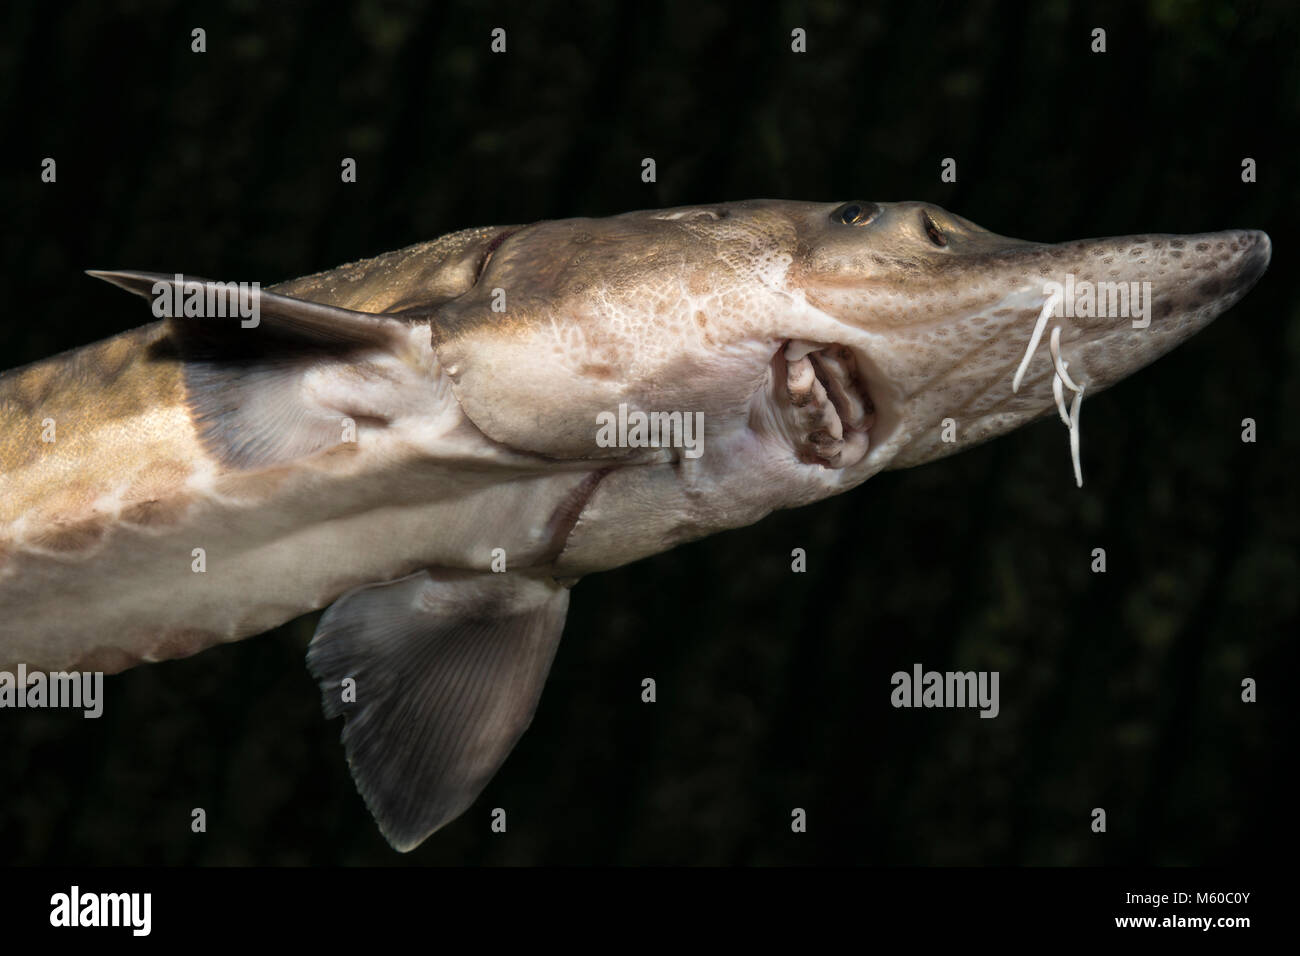 European Sea Sturgeon, Common Sturgeon, Baltic Sturgeon (Acipenser sturio). Adult seen from underneath. Germany Stock Photo